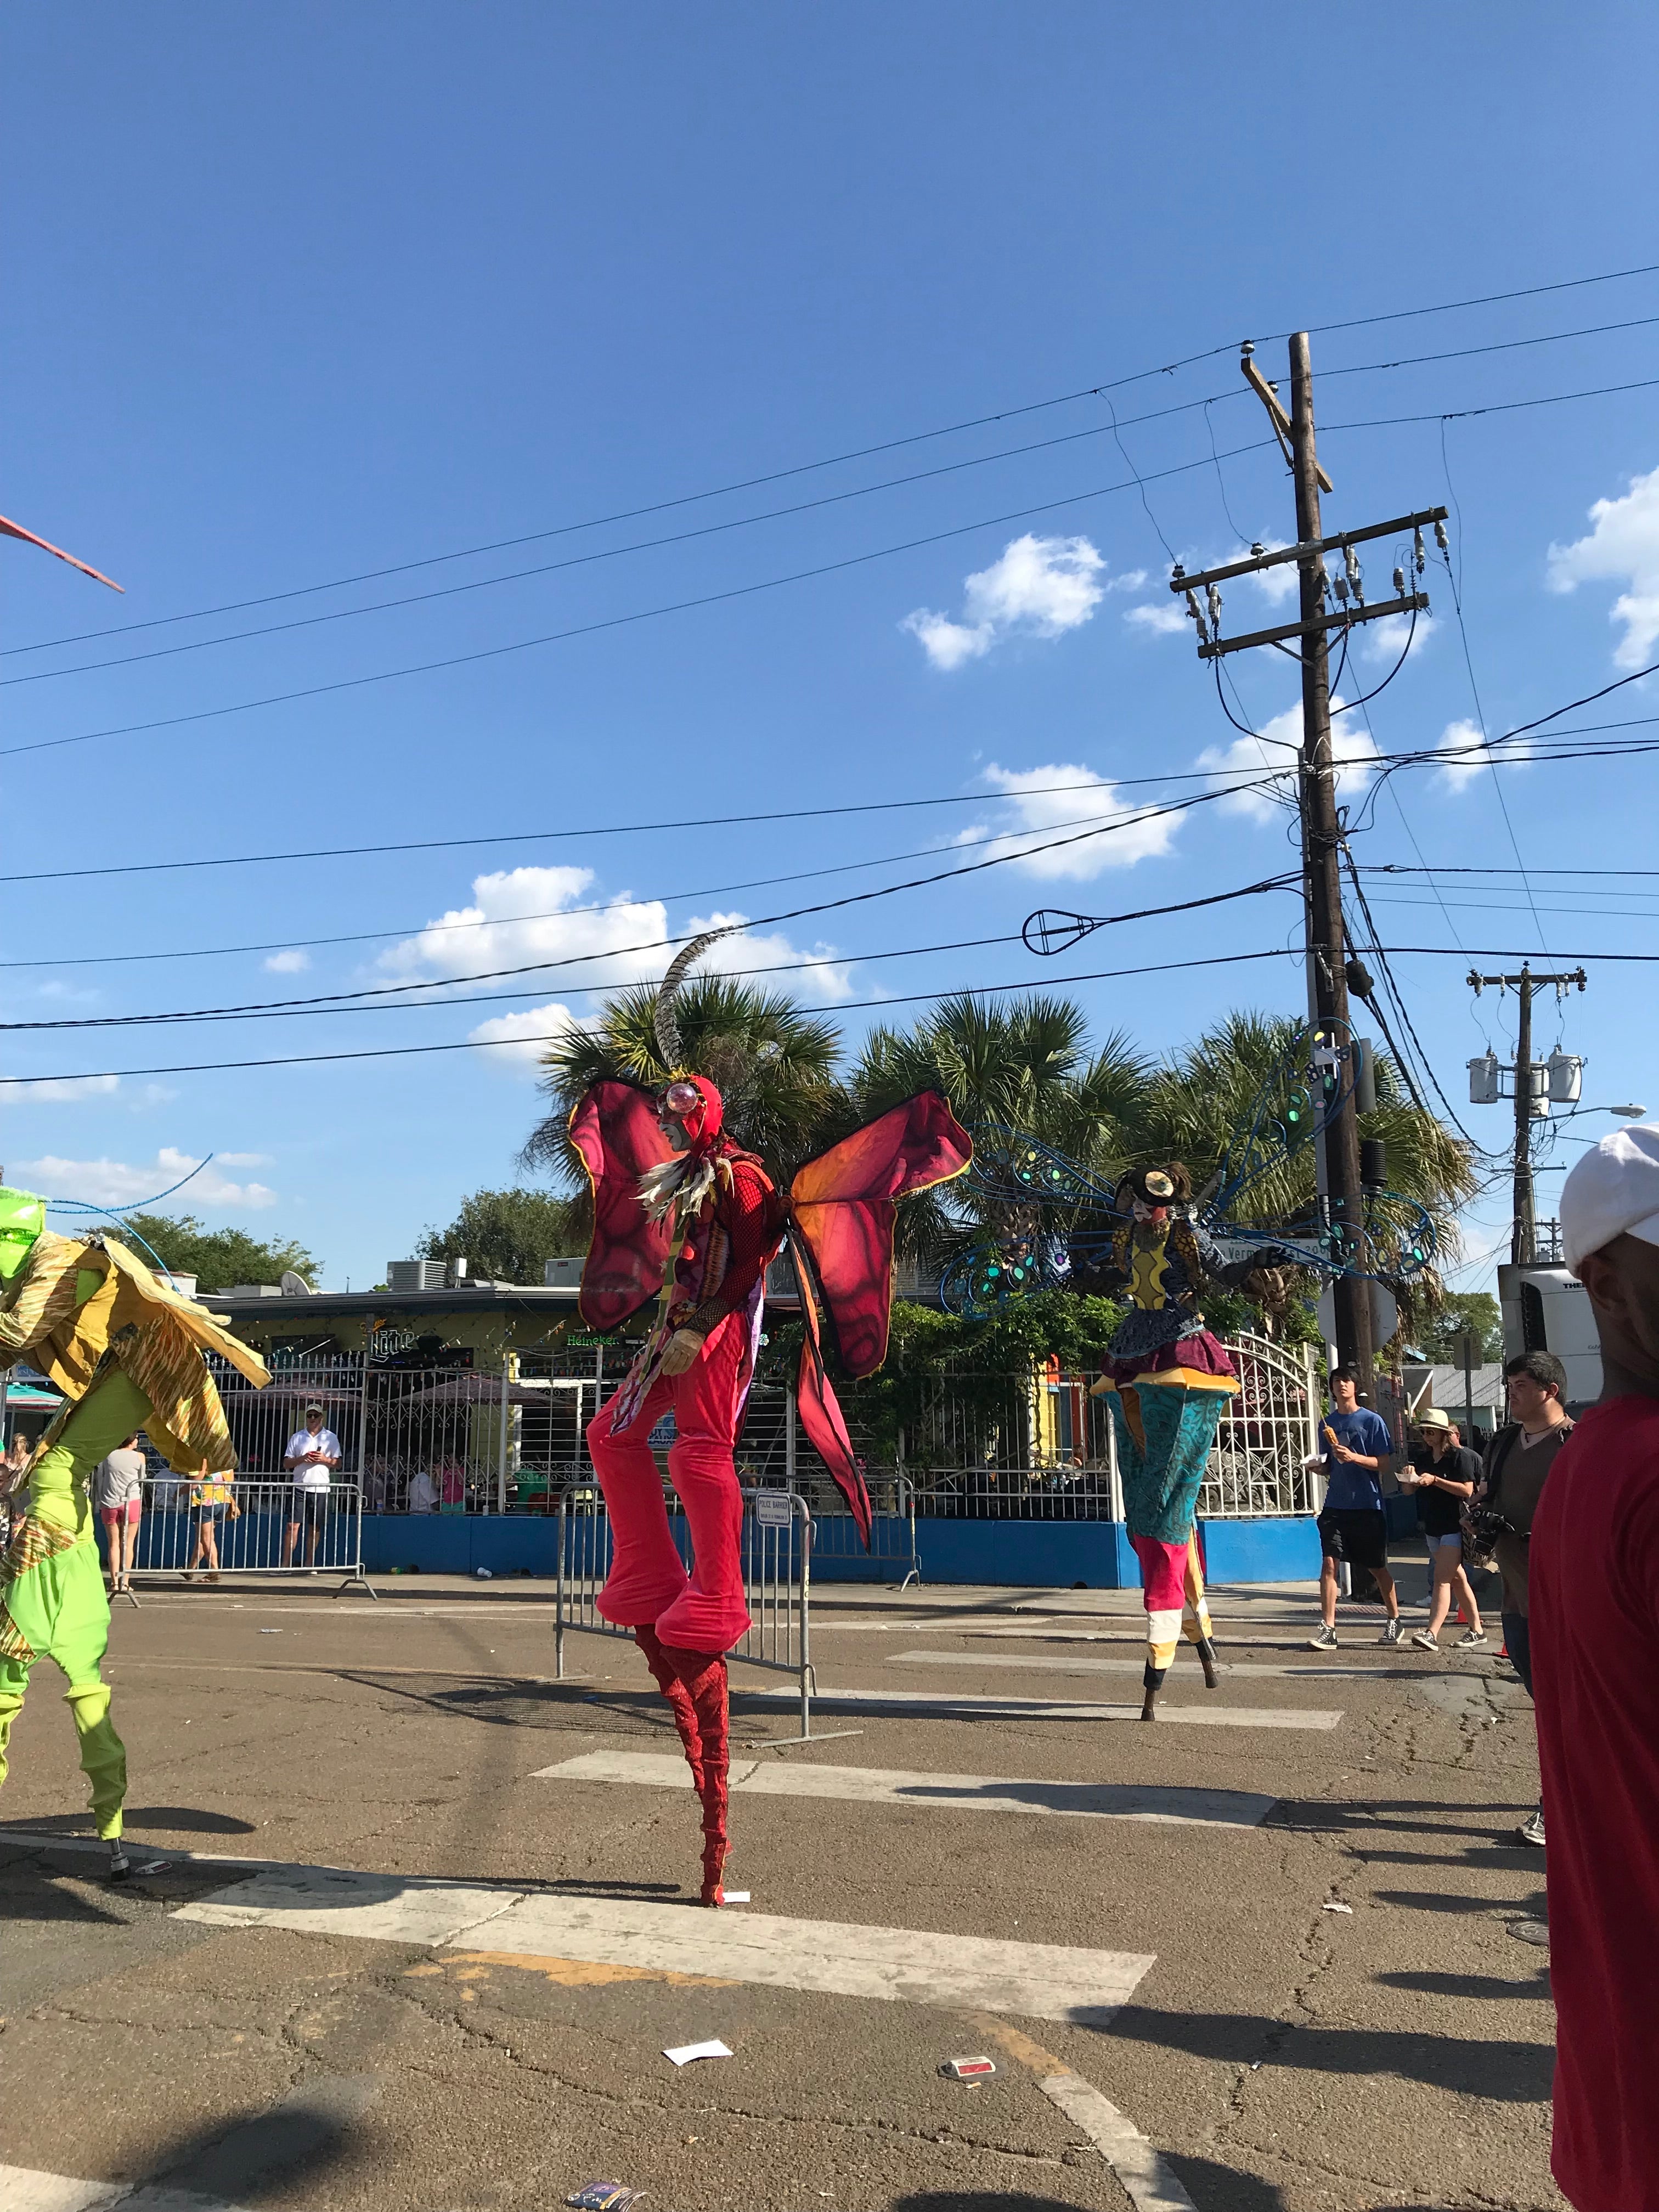 Stilt Walkers at Festival International in Lafayette, Louisiana